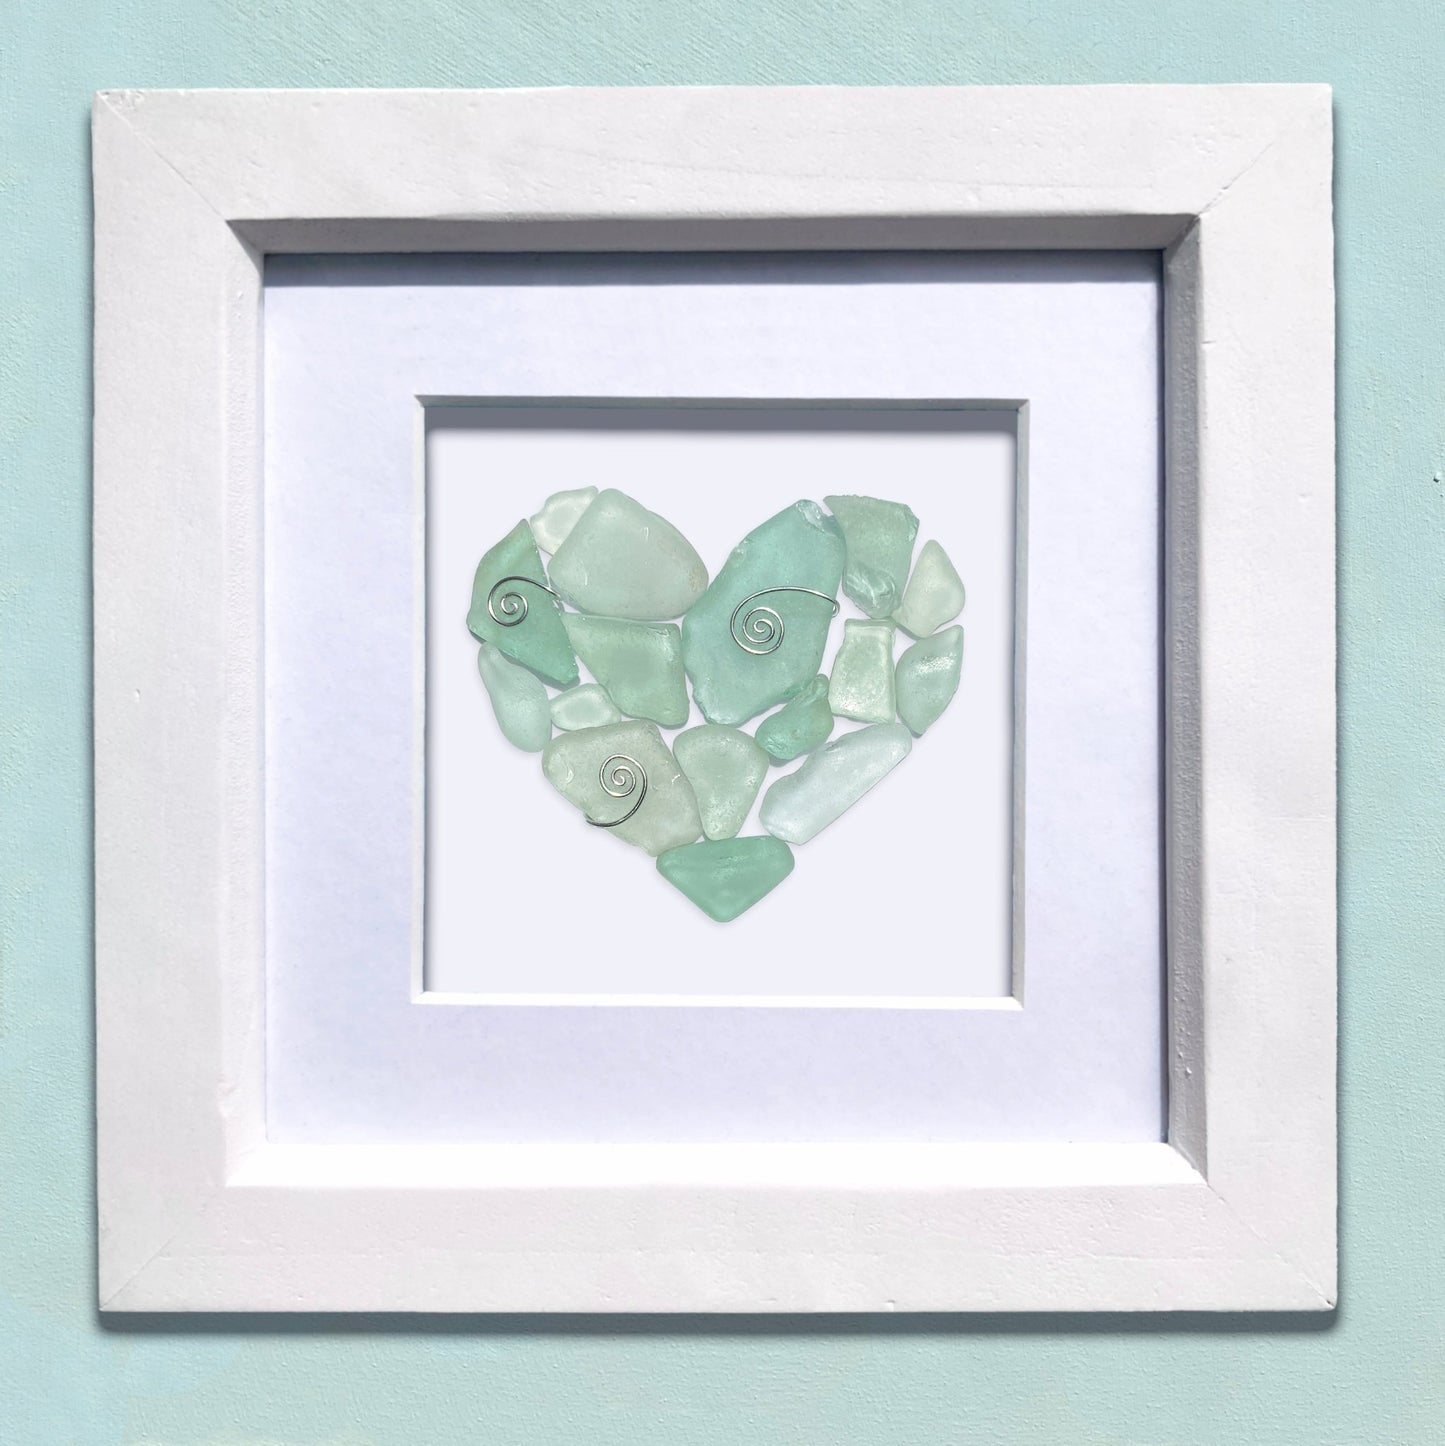 Framed Original Sea Glass Heart Wall Art - Green Scottish Beach Glass Picture - East Neuk Beach Crafts